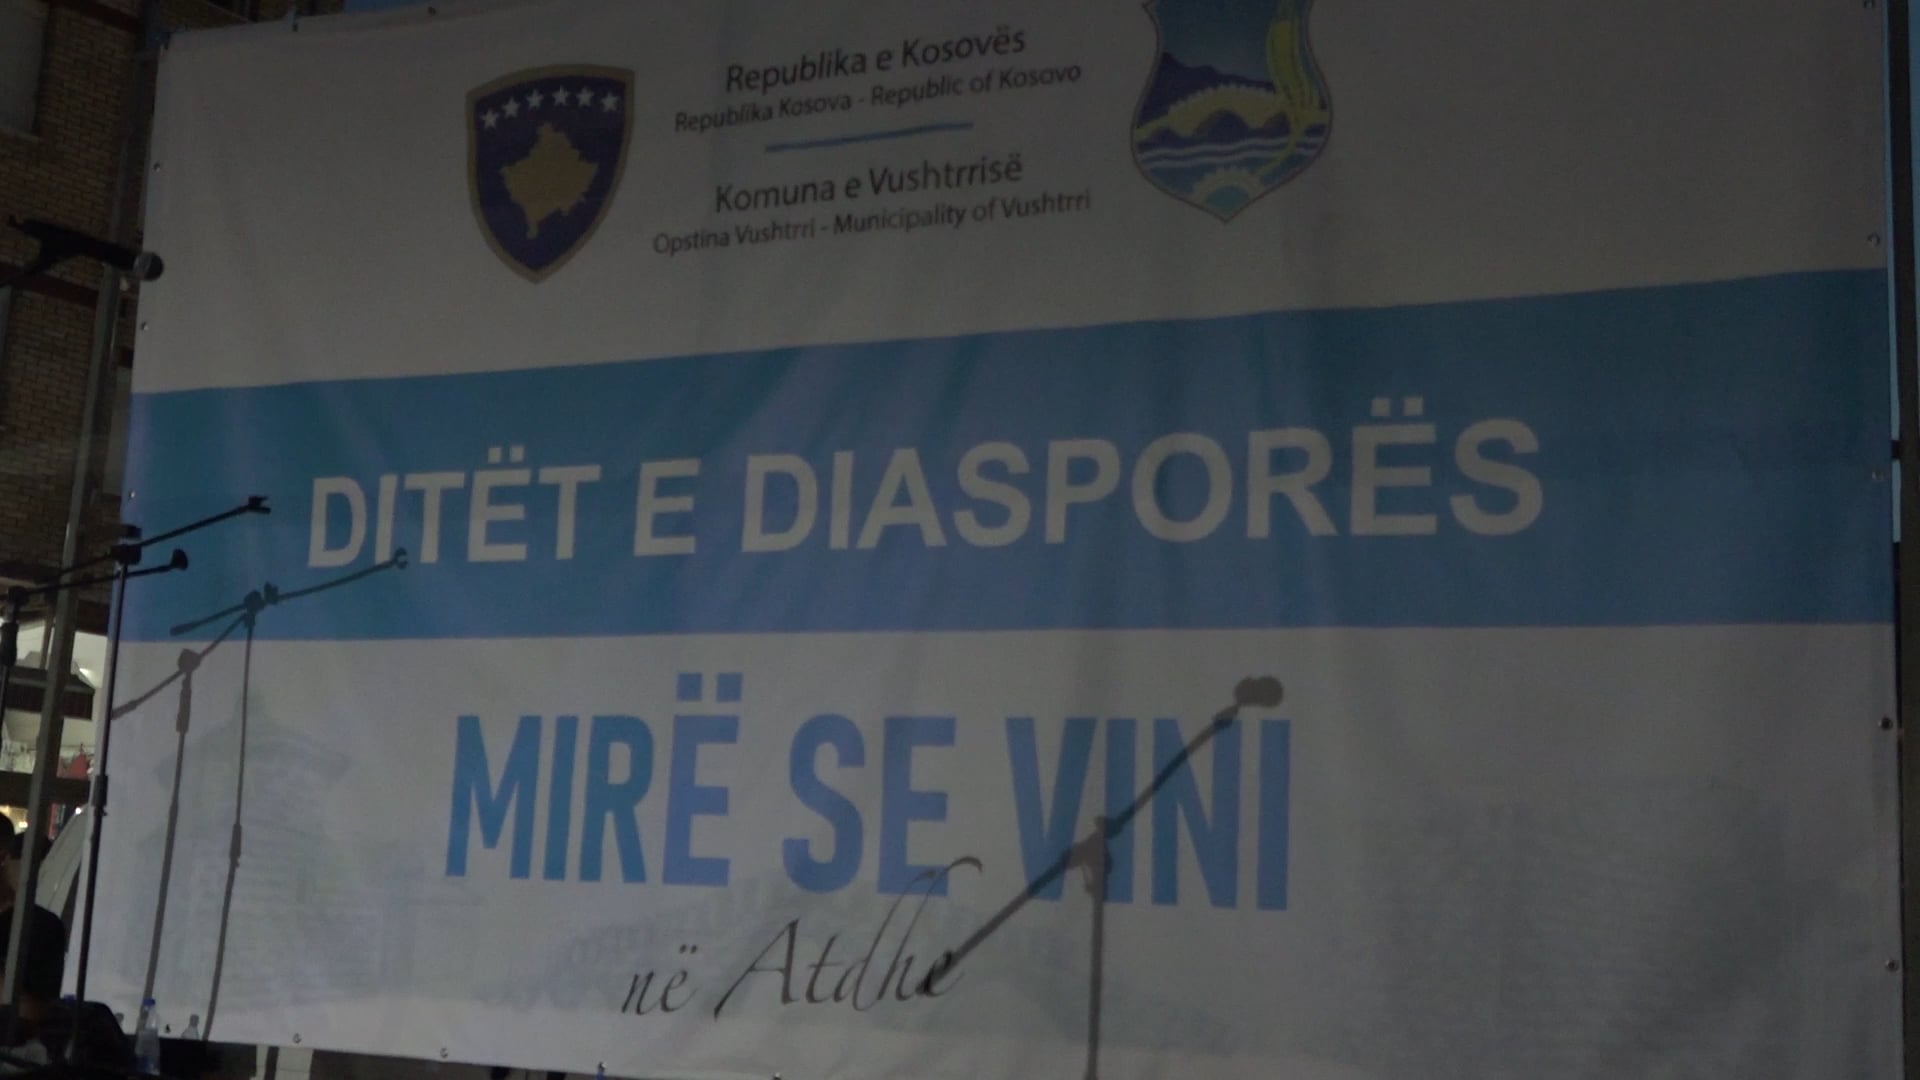 Komuna e Vushtrrisë organizon “Ditët e Diasporës”, Idrizi e çmon kontributin e tyre on Vimeo